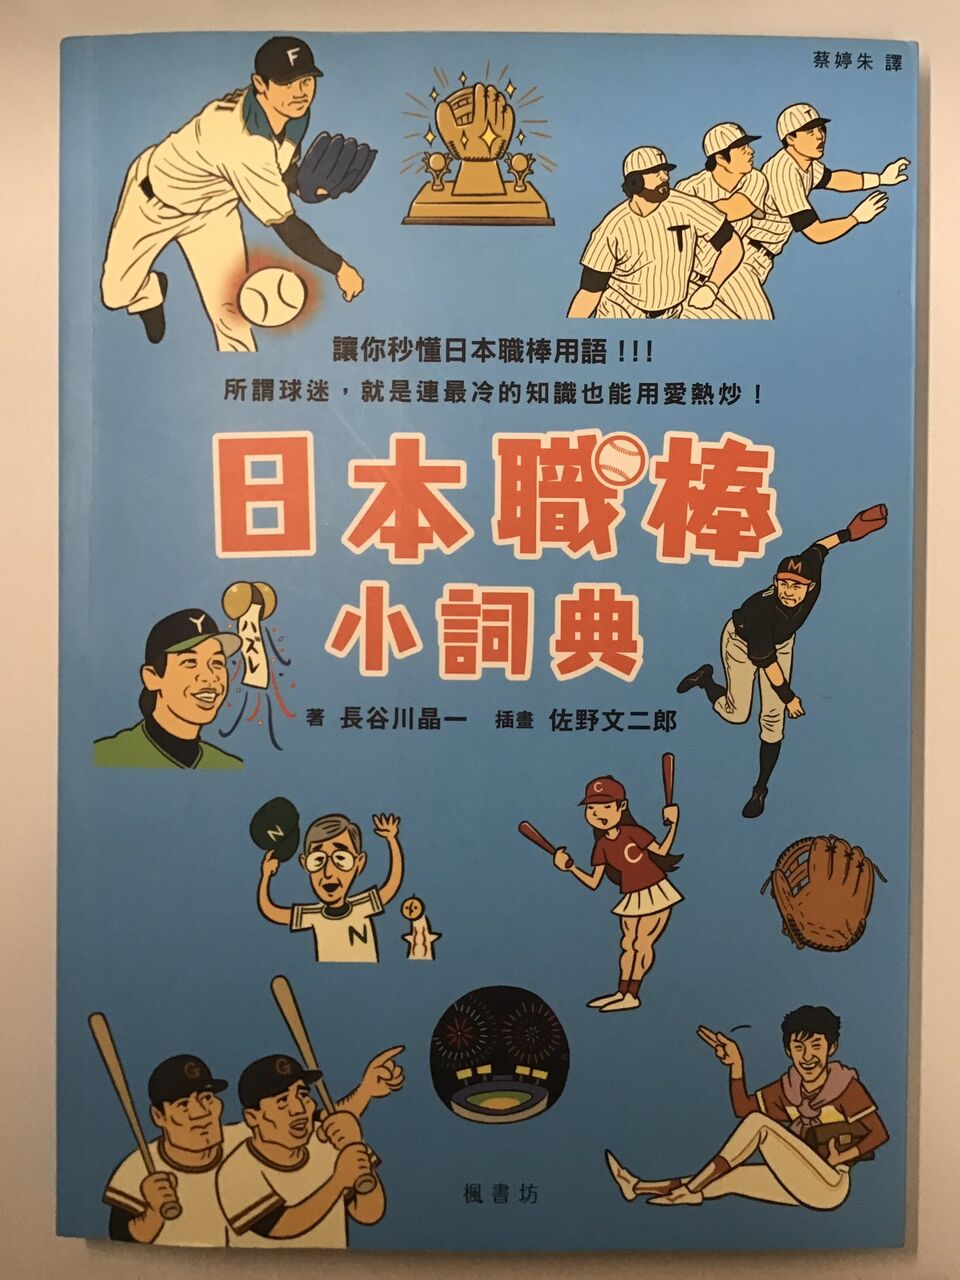 台湾の野球用語辞典でなんjが紹介されるwwww 虎 Lucky